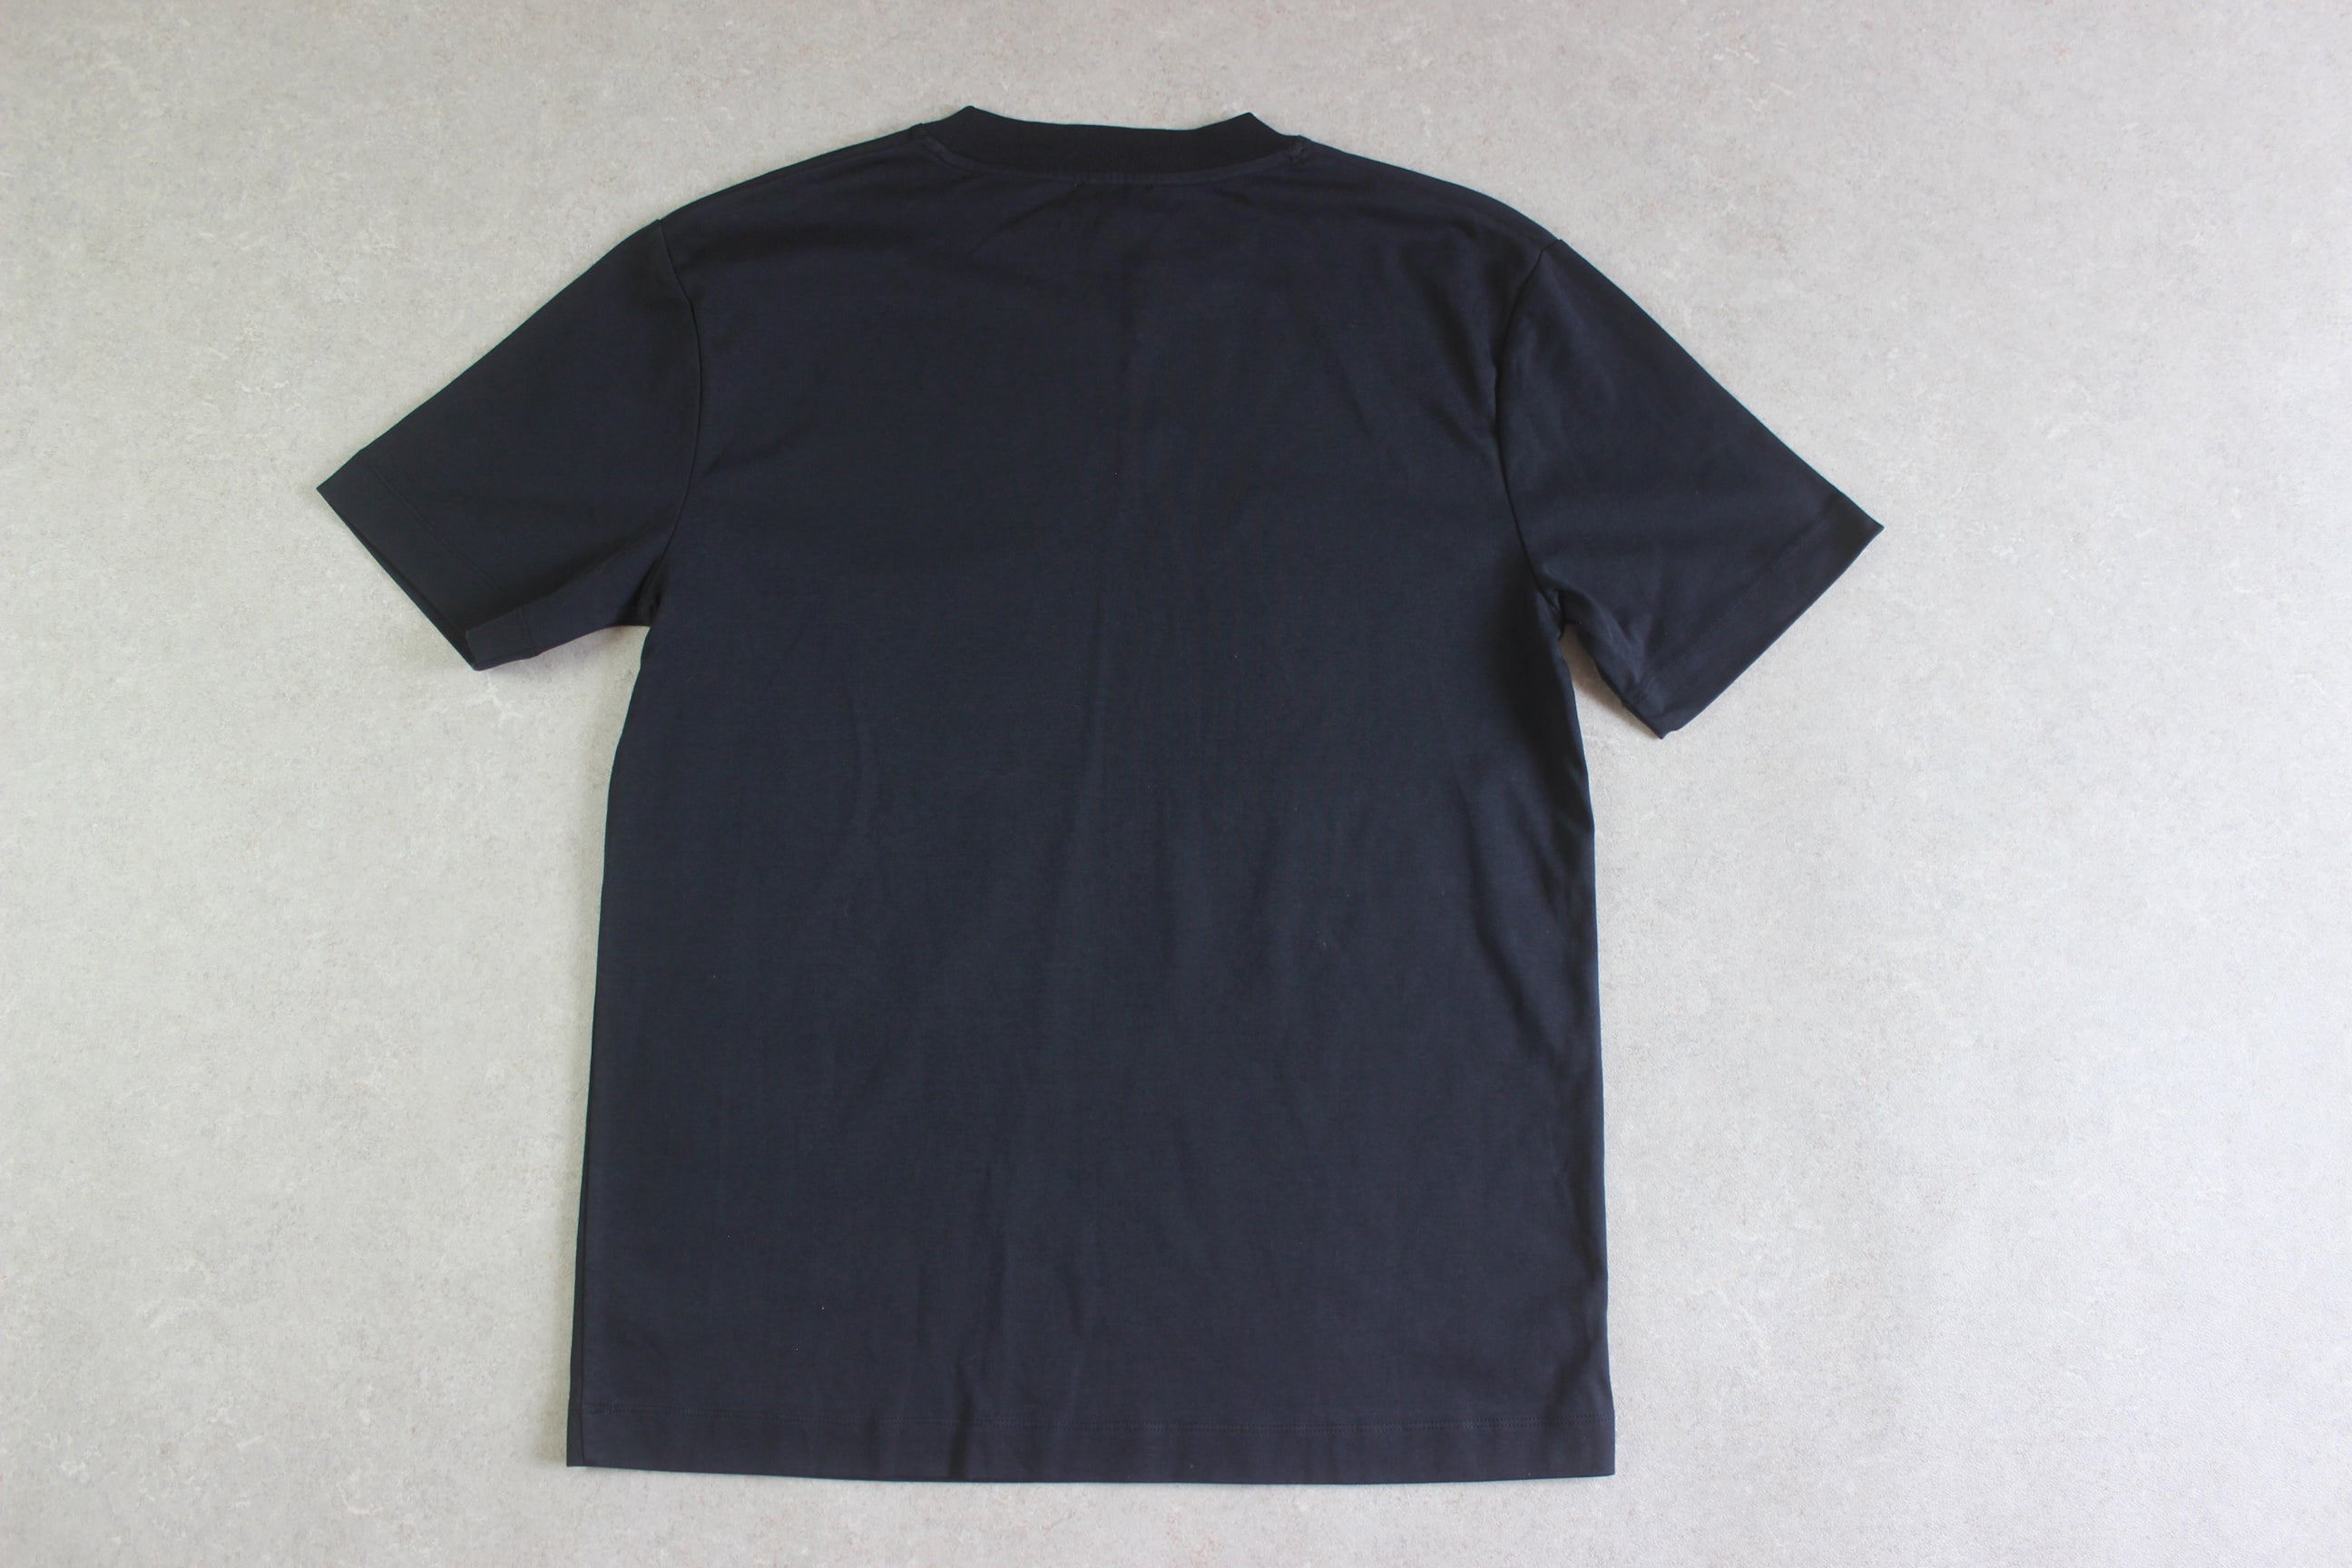 Sunspel - Brand New T Shirt - Black - Medium